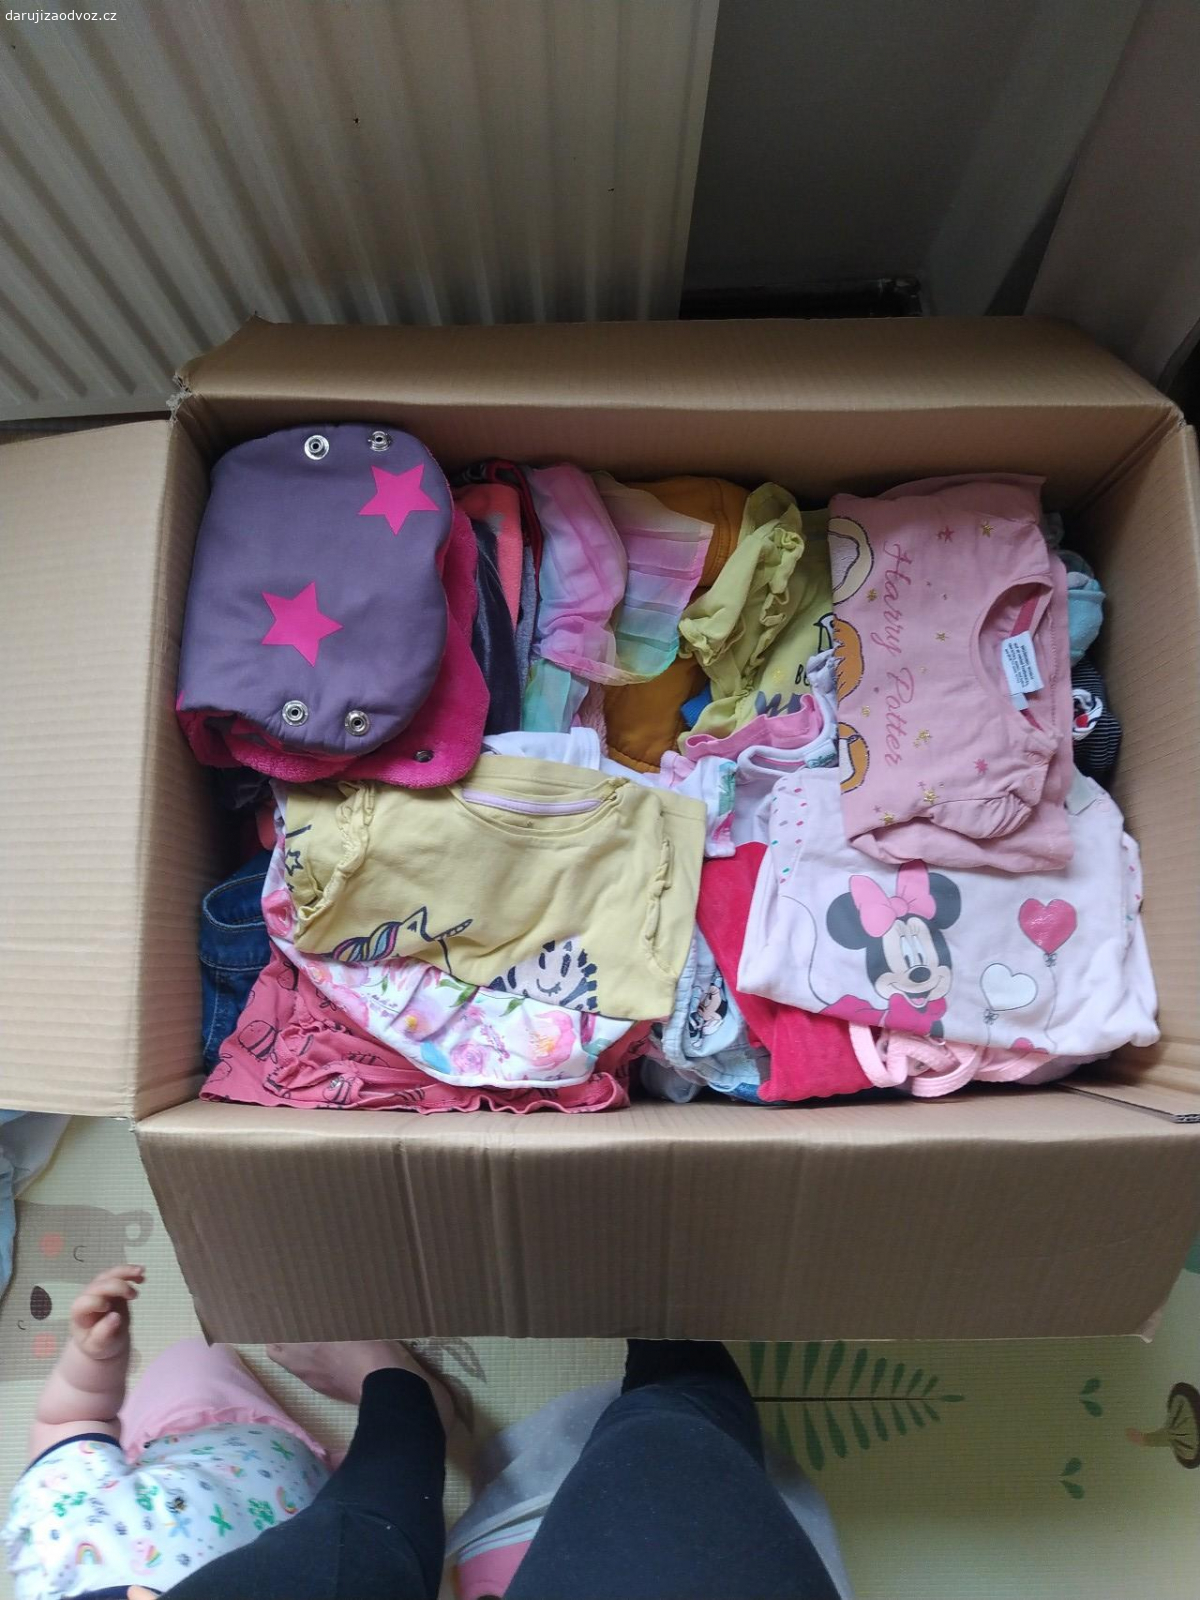 Krabice s dívčím oblečením. Daruji krabici s mixem dívčího oblečení (0-2r) + nějaké hračky